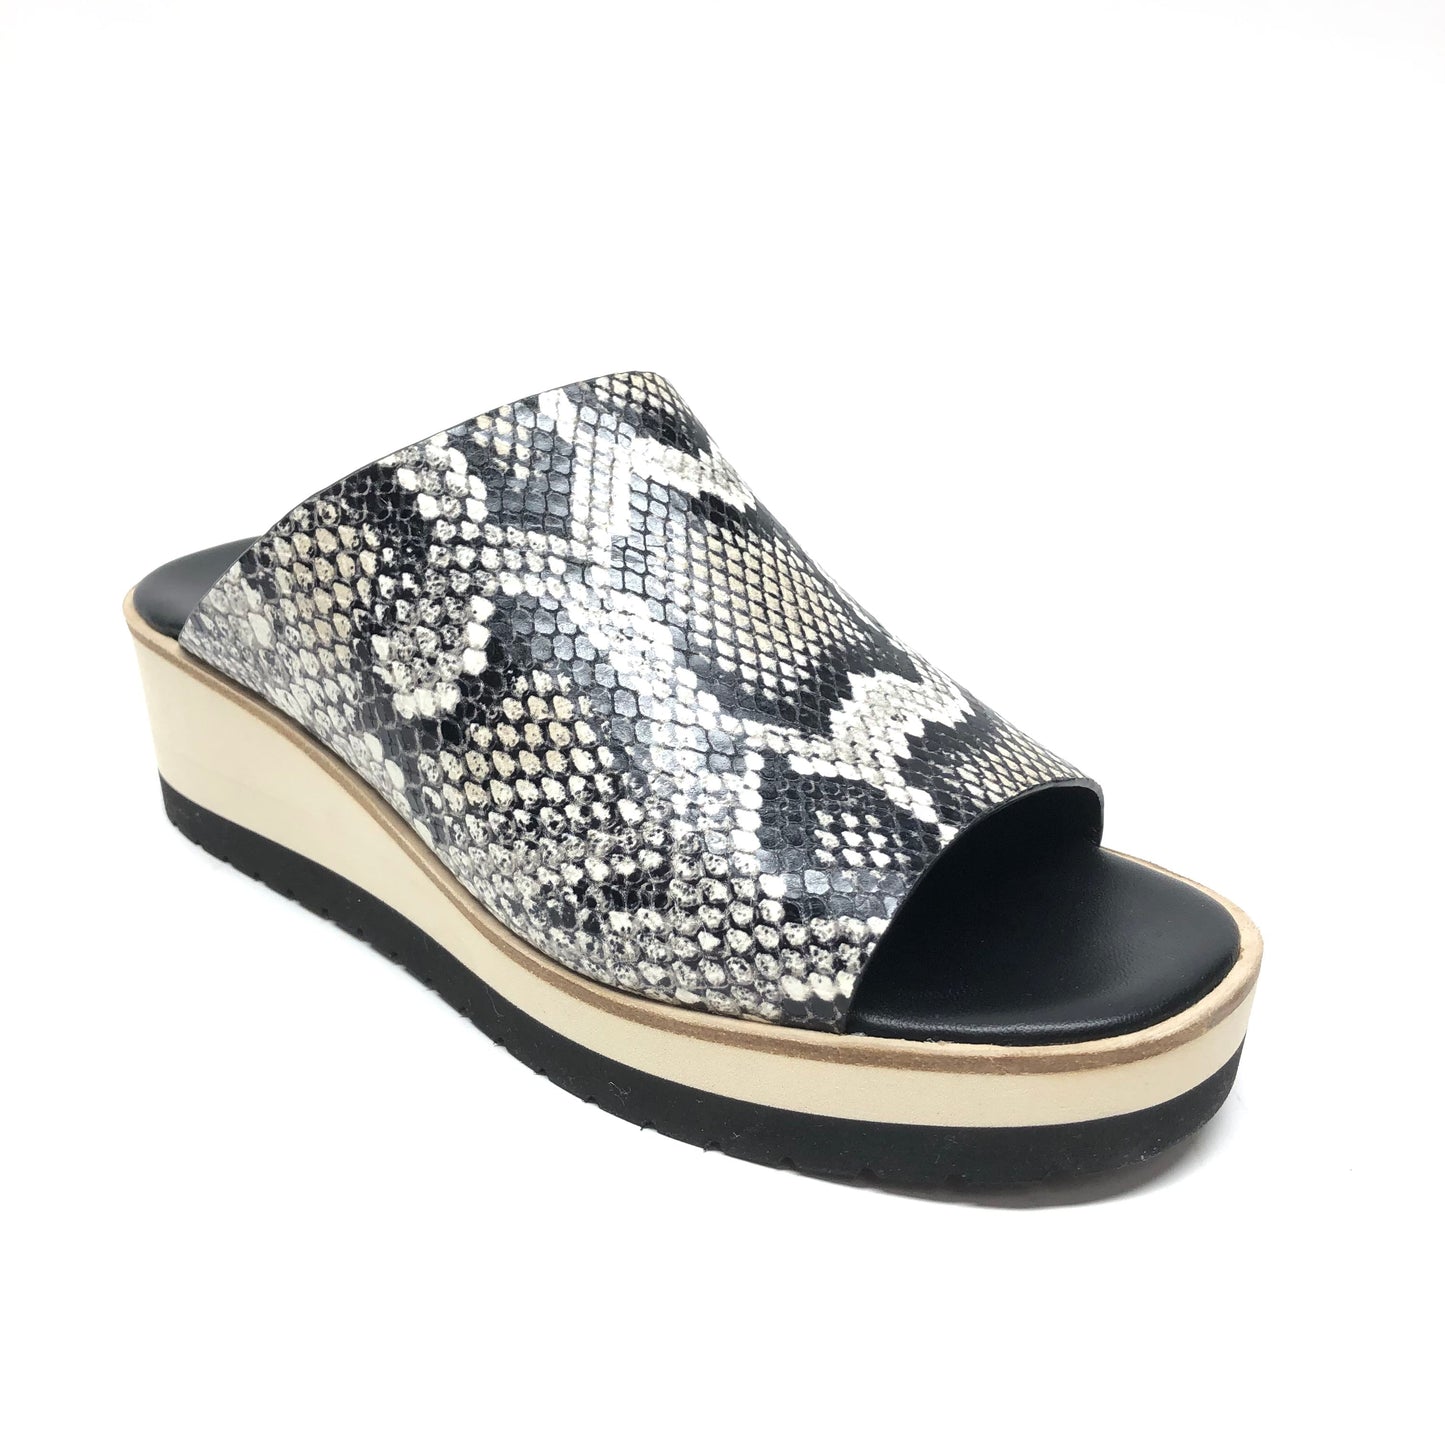 Snakeskin Print Sandals Heels Platform Vince, Size 6.5